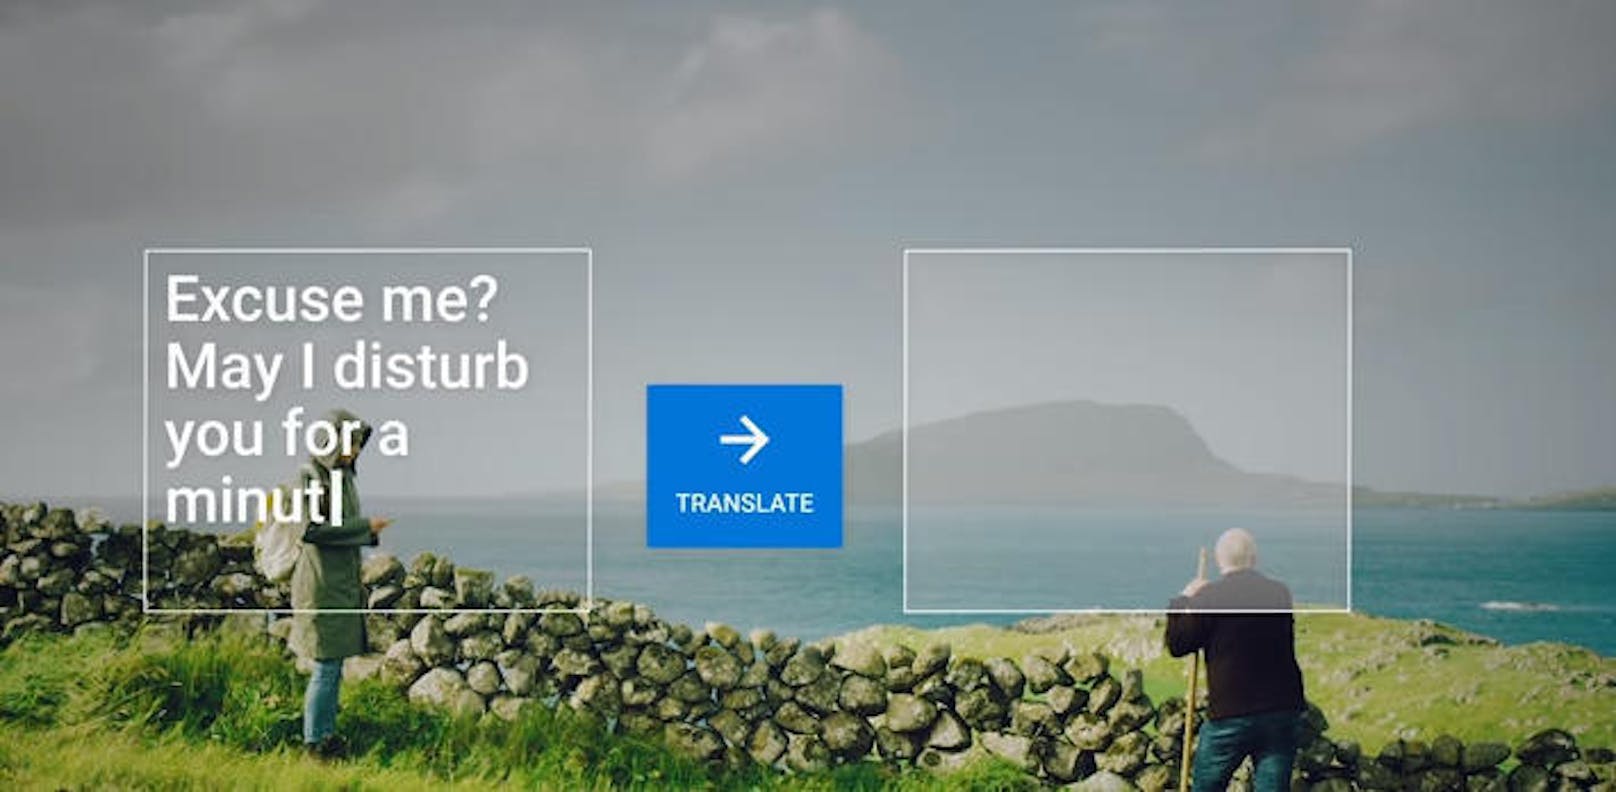 Diesen Dienst können Reisende nutzen, um sich einfache Redewendungen oder einzelne Wörter übersetzen zu lassen.